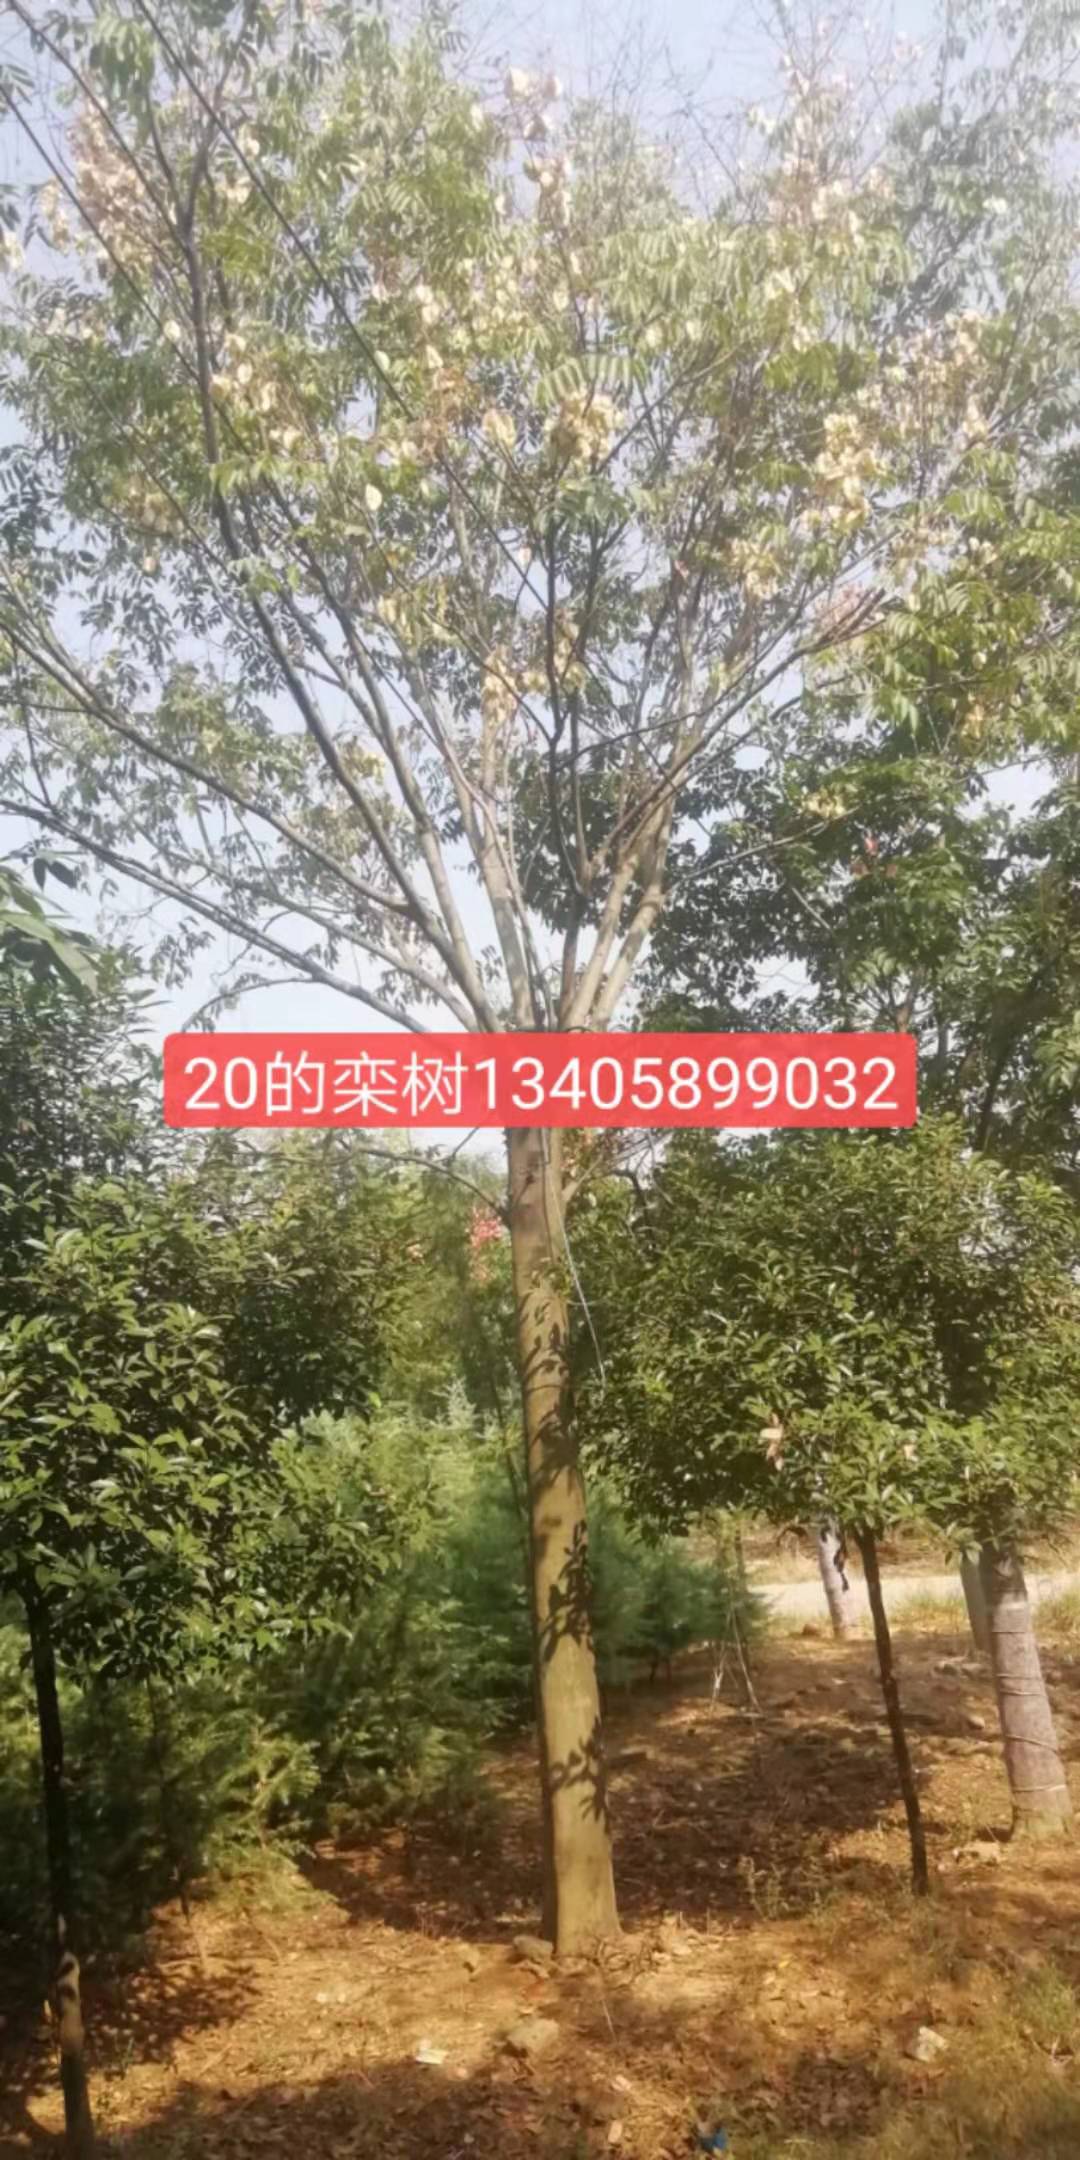 南京宗杰绿化苗木电话、绿化苗木基地、宗杰提供多种规格绿化苗木图片